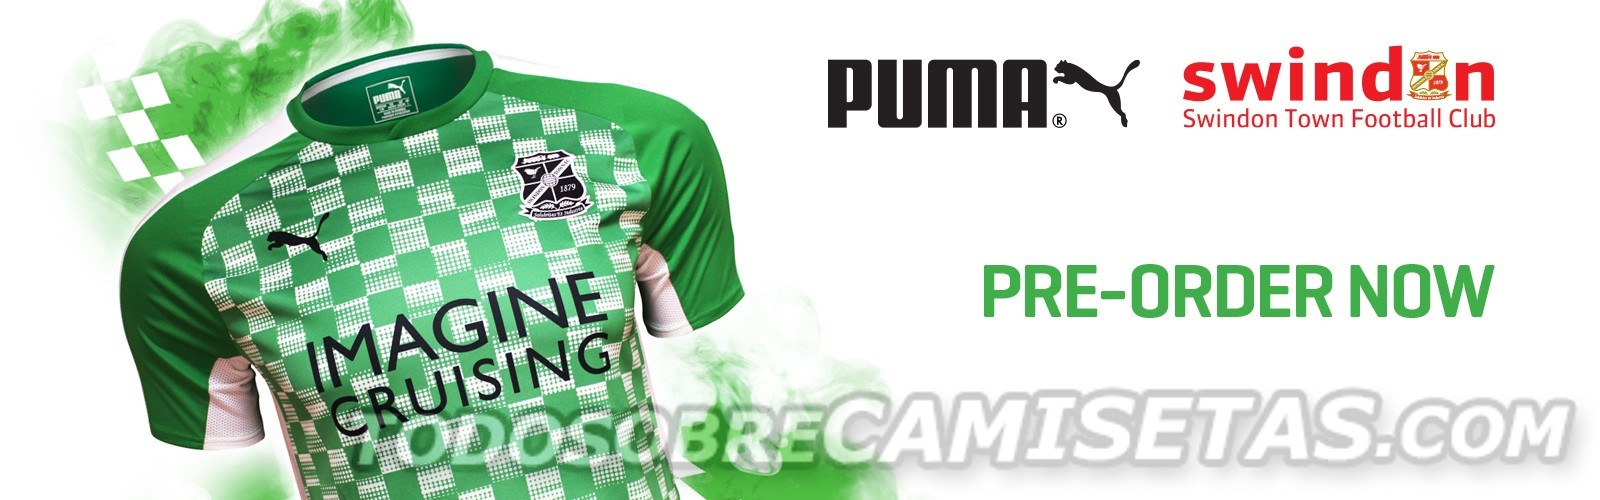 Swindon Town FC Puma 2017-18 Kits